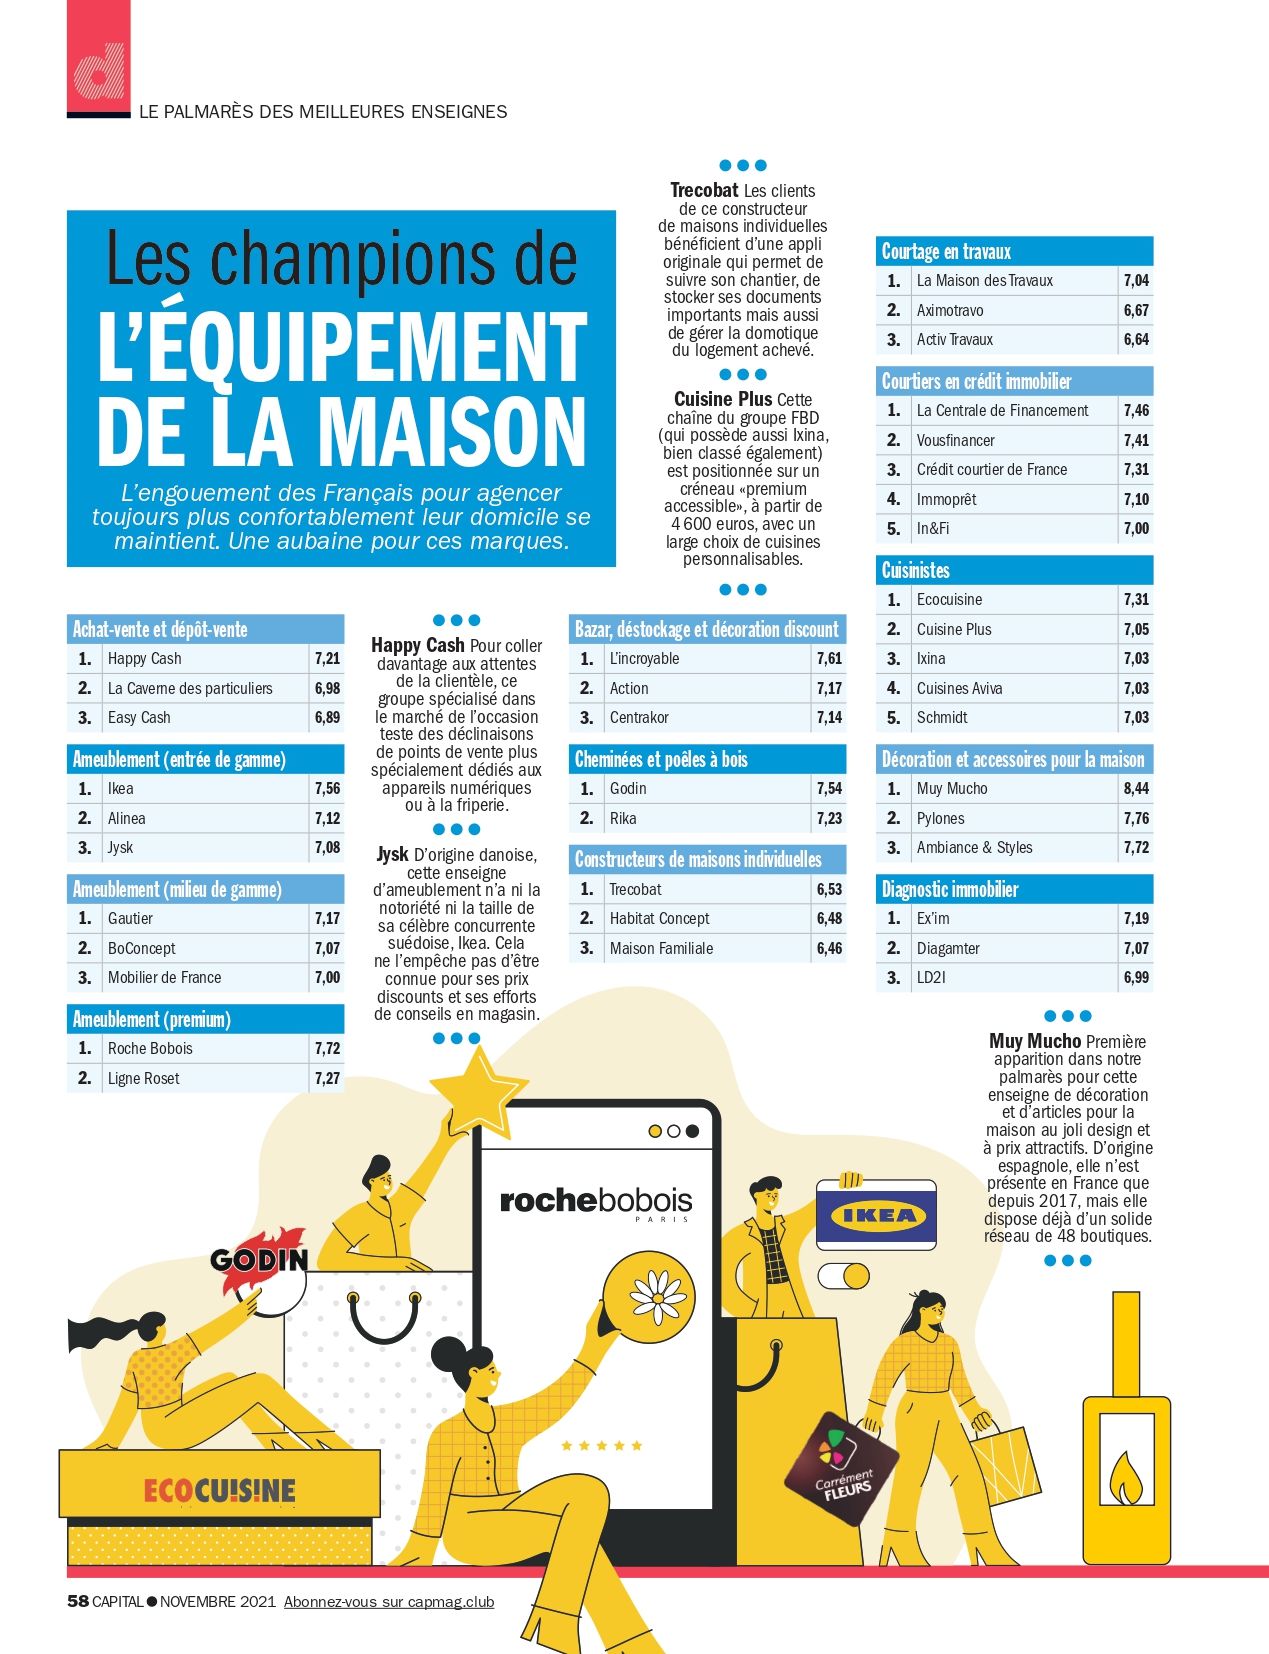 Les Compagnons des Saisons : Enseigne de Jardinerie préférée des Français – Champion de l’équipement de la maison par le magazine Capital – 2021